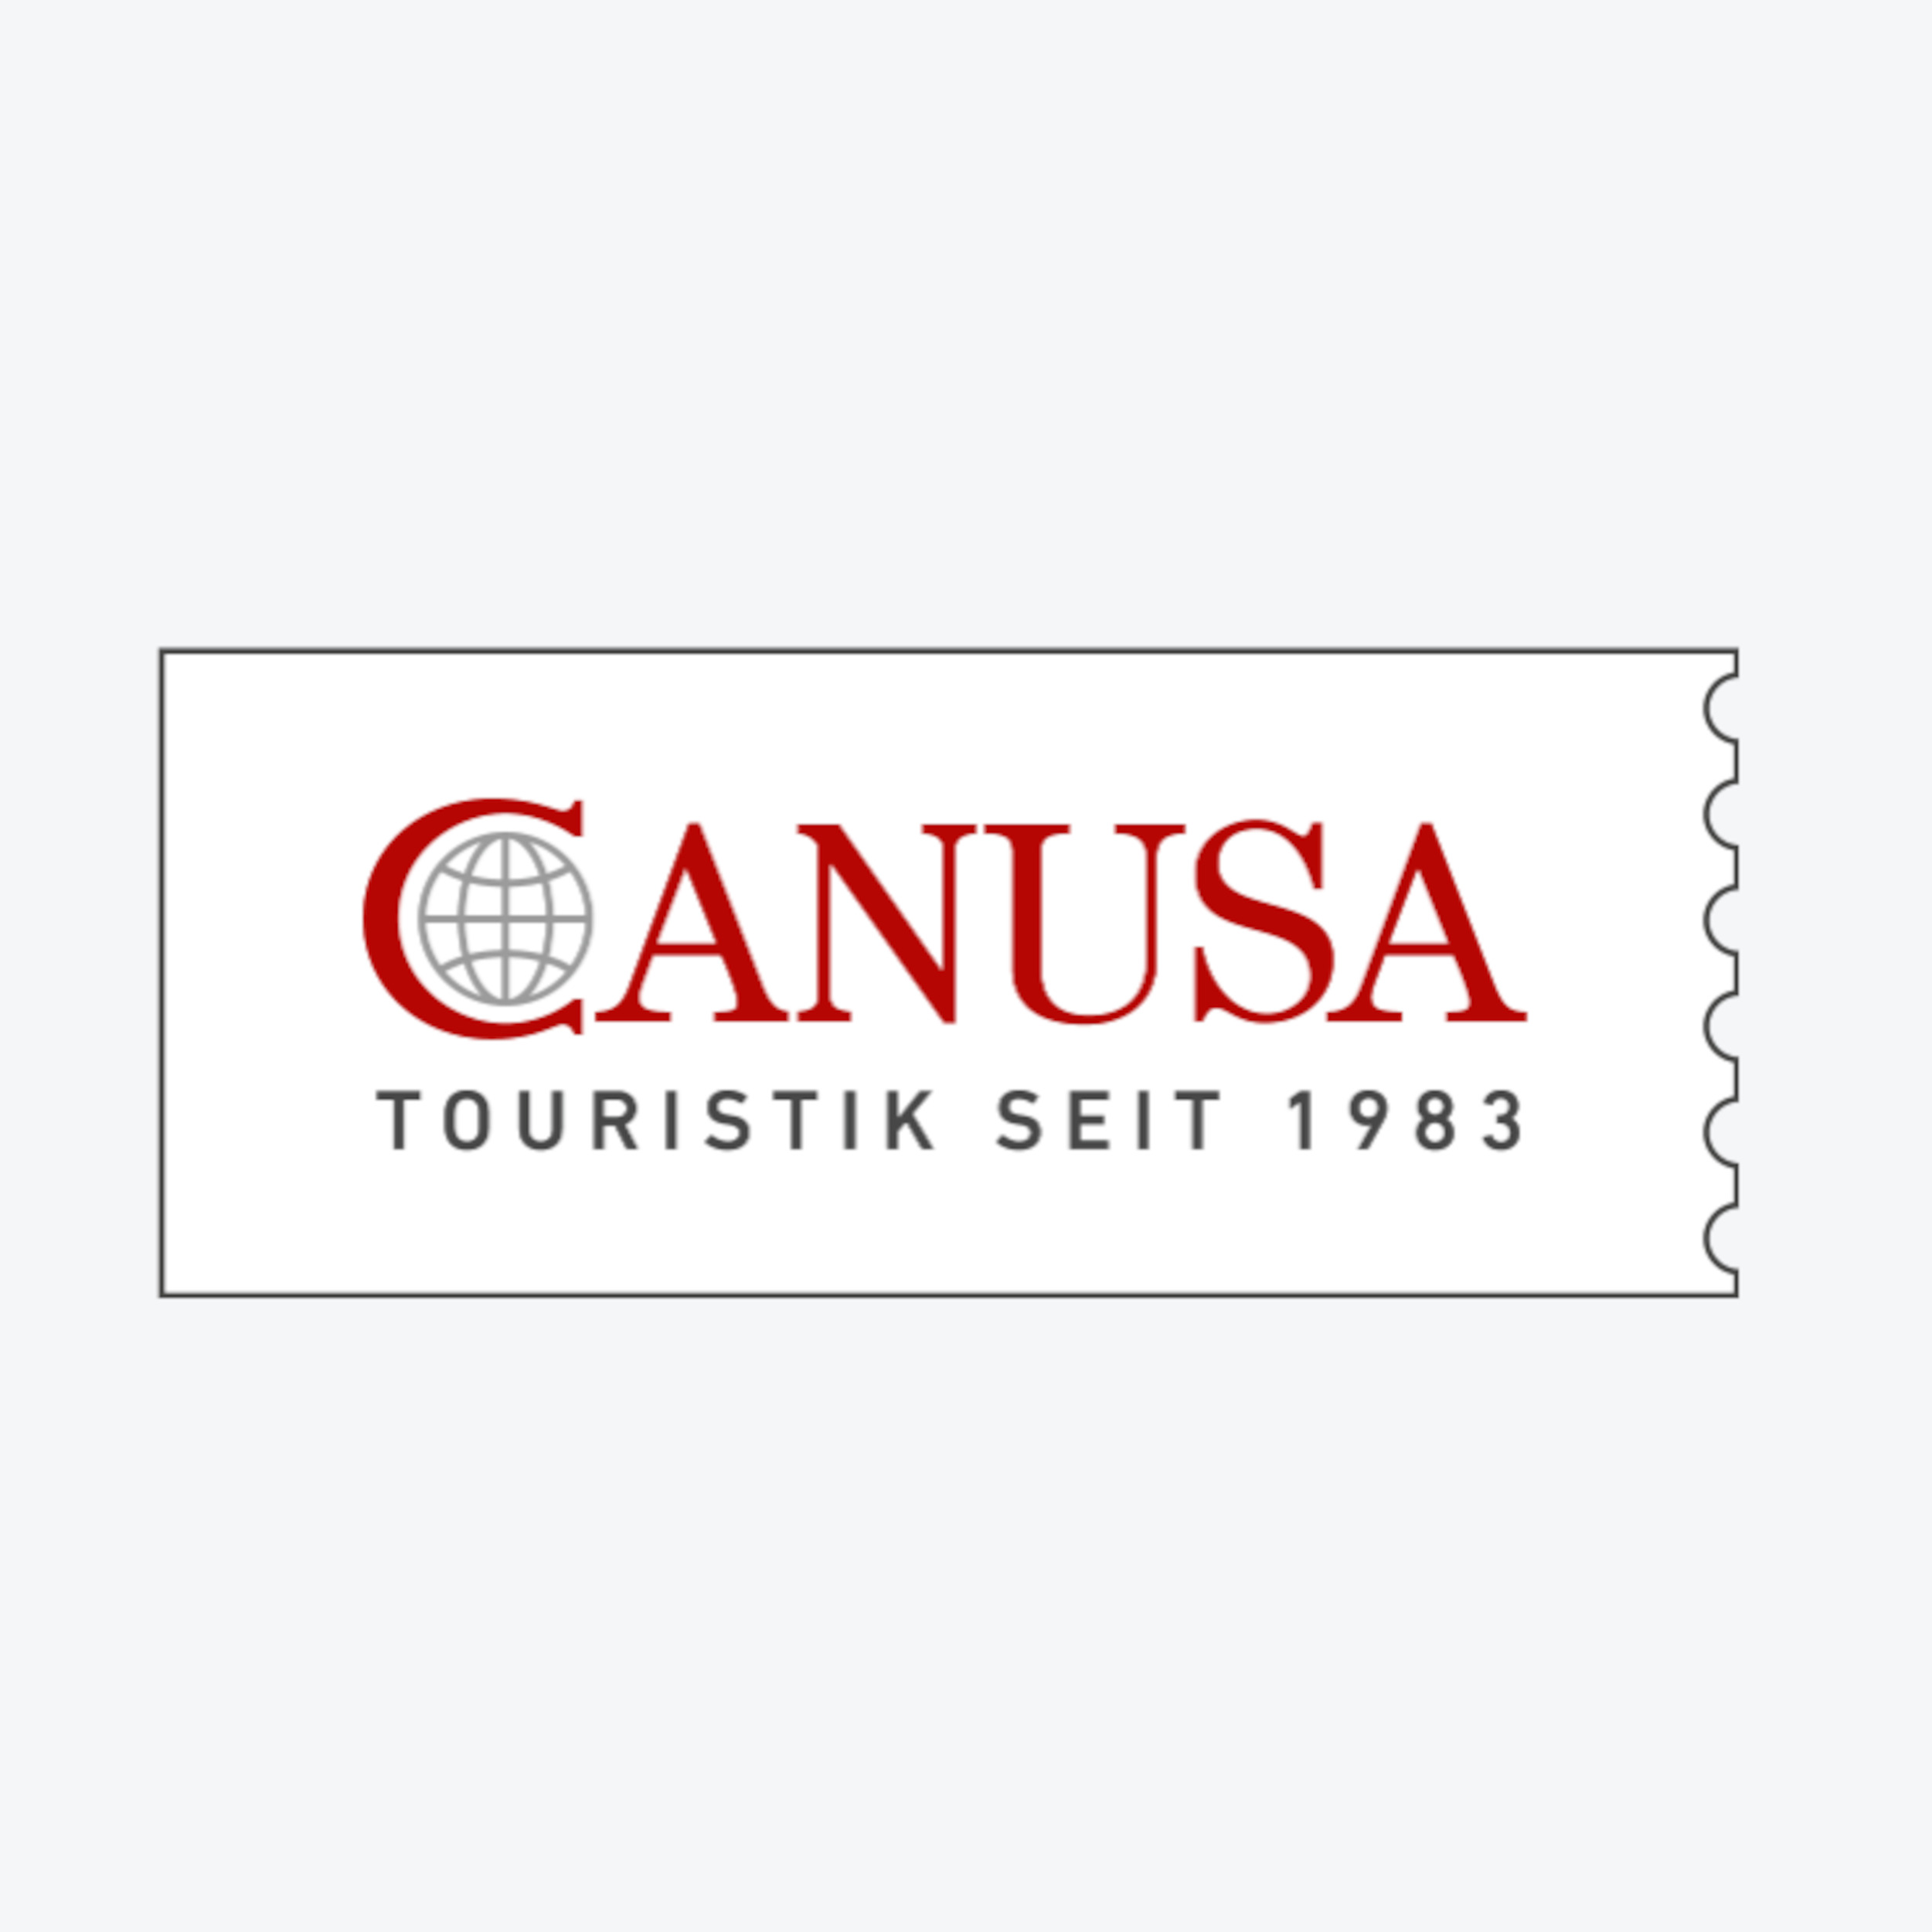 Canusa-logo